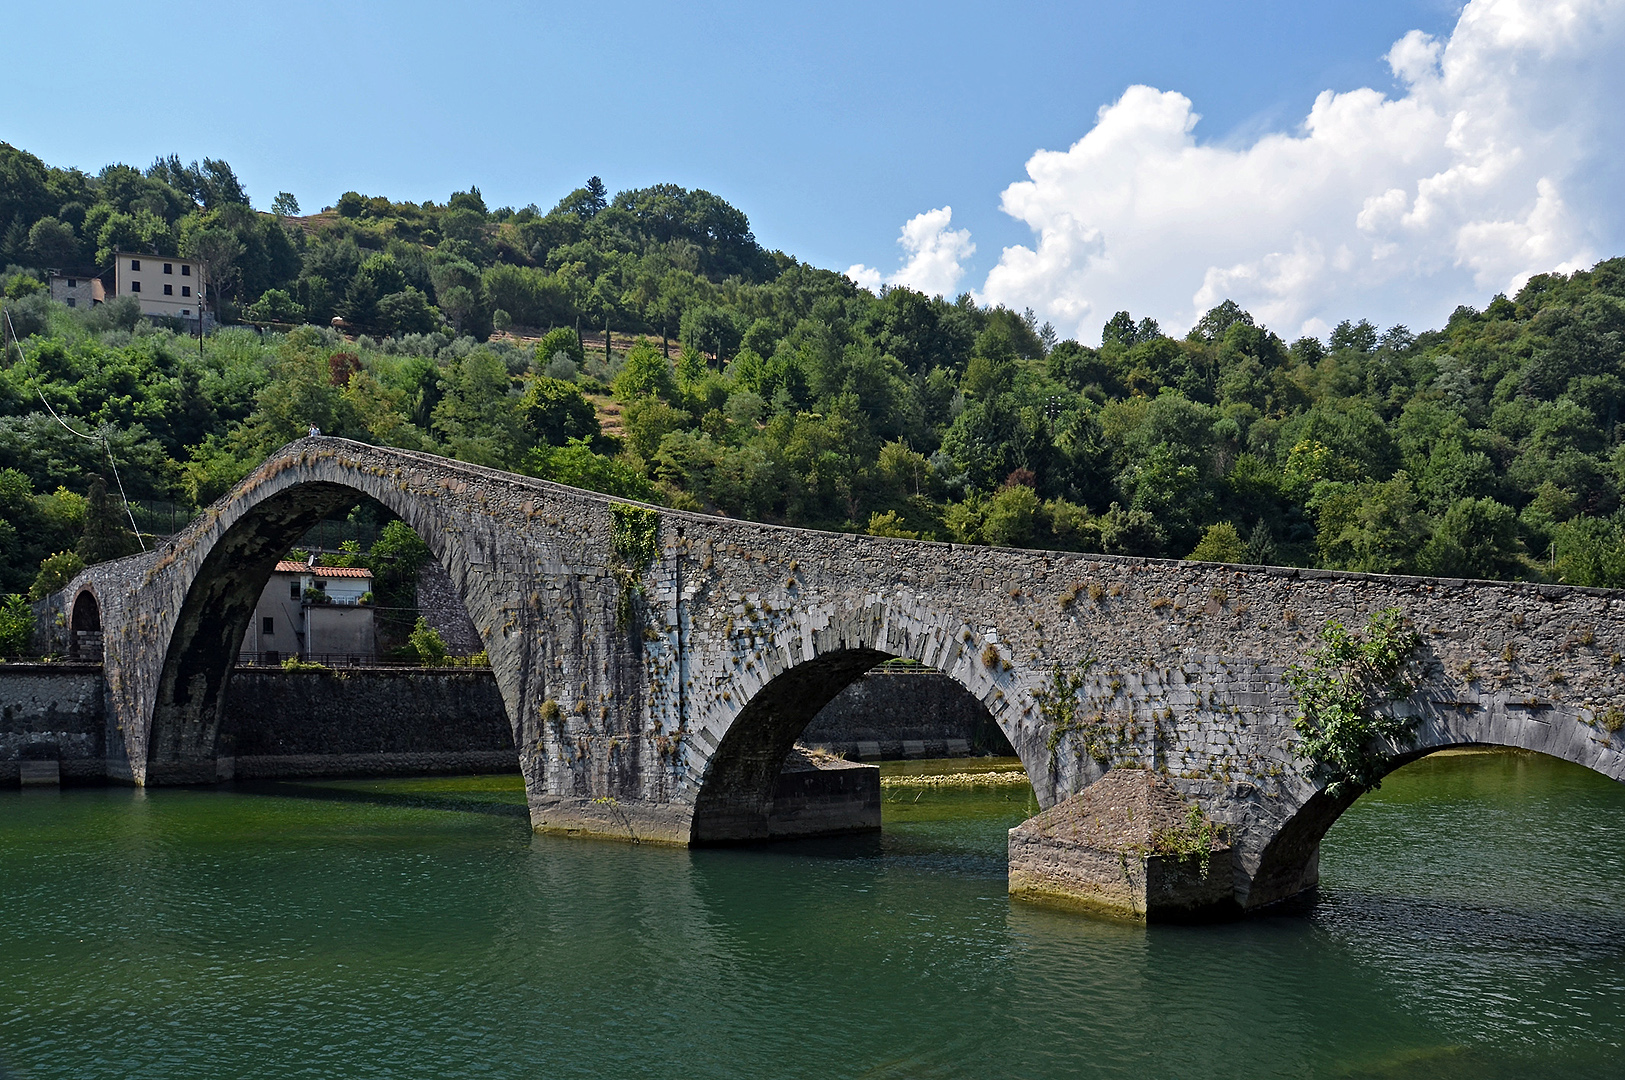 Ponte della Maddalena, Borgo a Mozzano, Itali; Ponte della Maddalena, Borgo a Mozzano, Italy